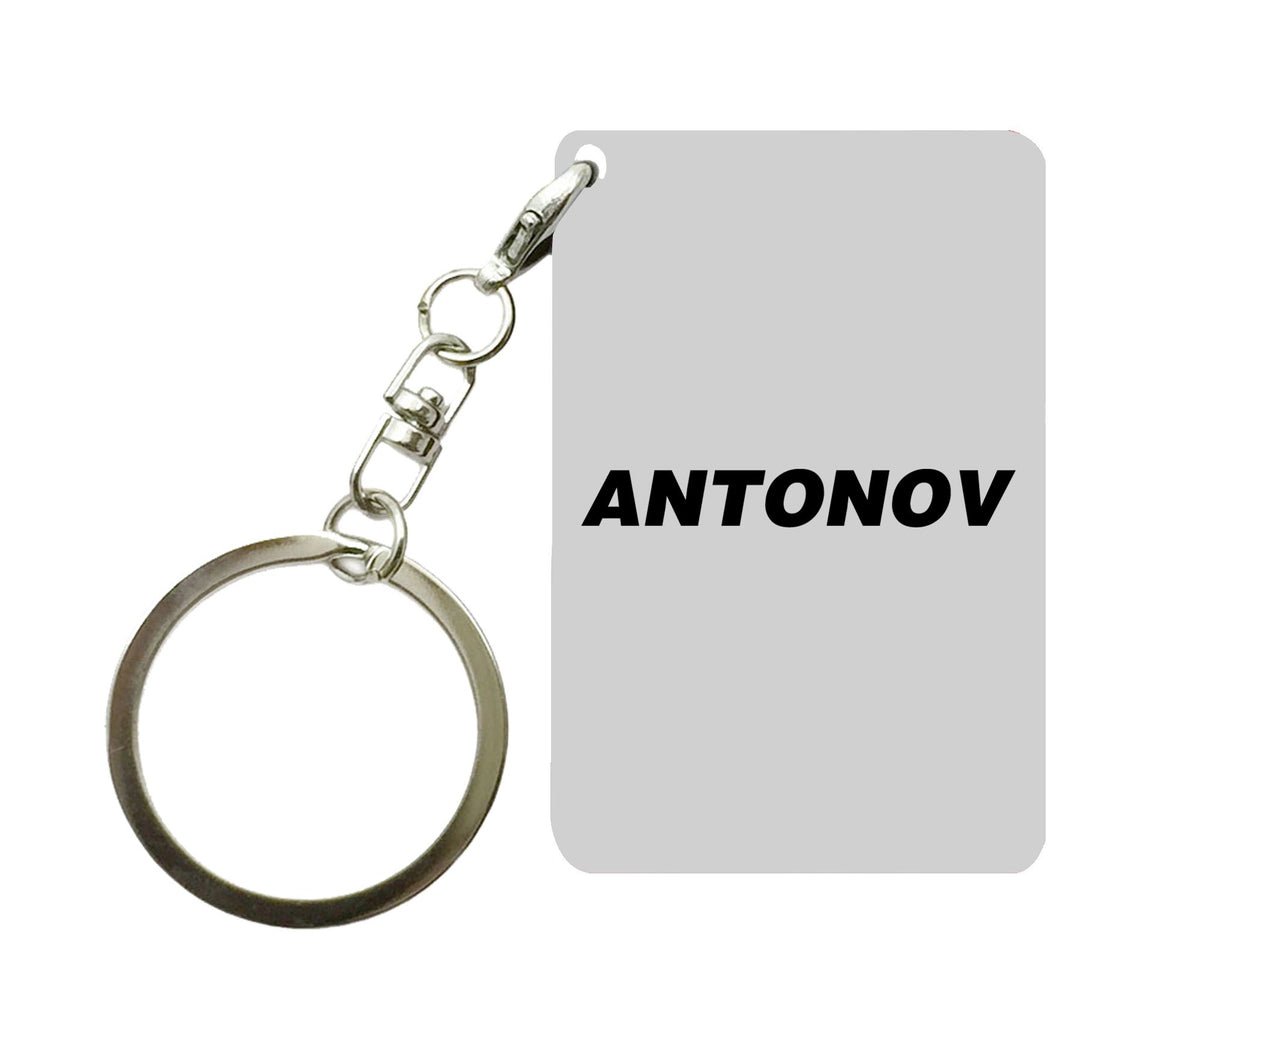 Antonov & Text Designed Key Chains